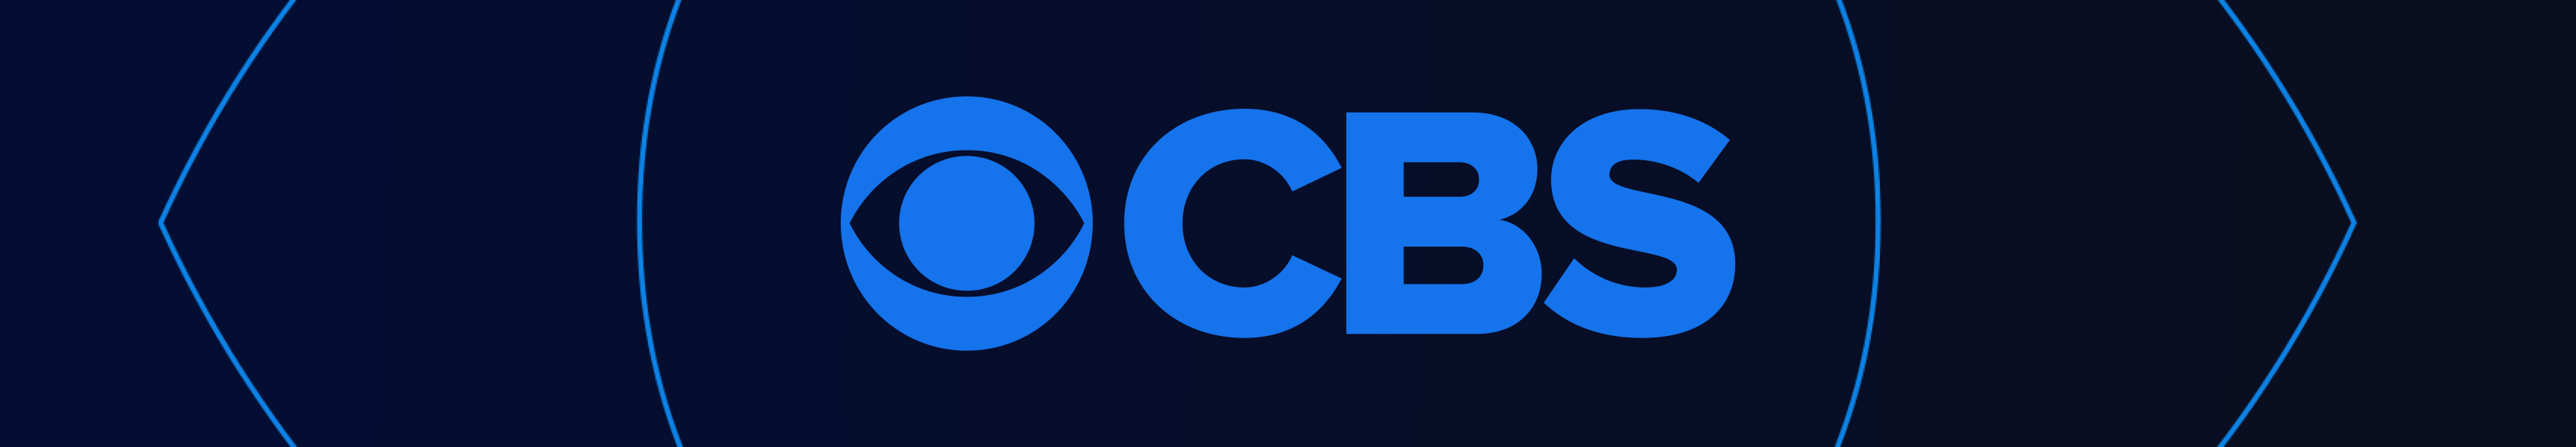 CBS Entertainment Collectibles & Games